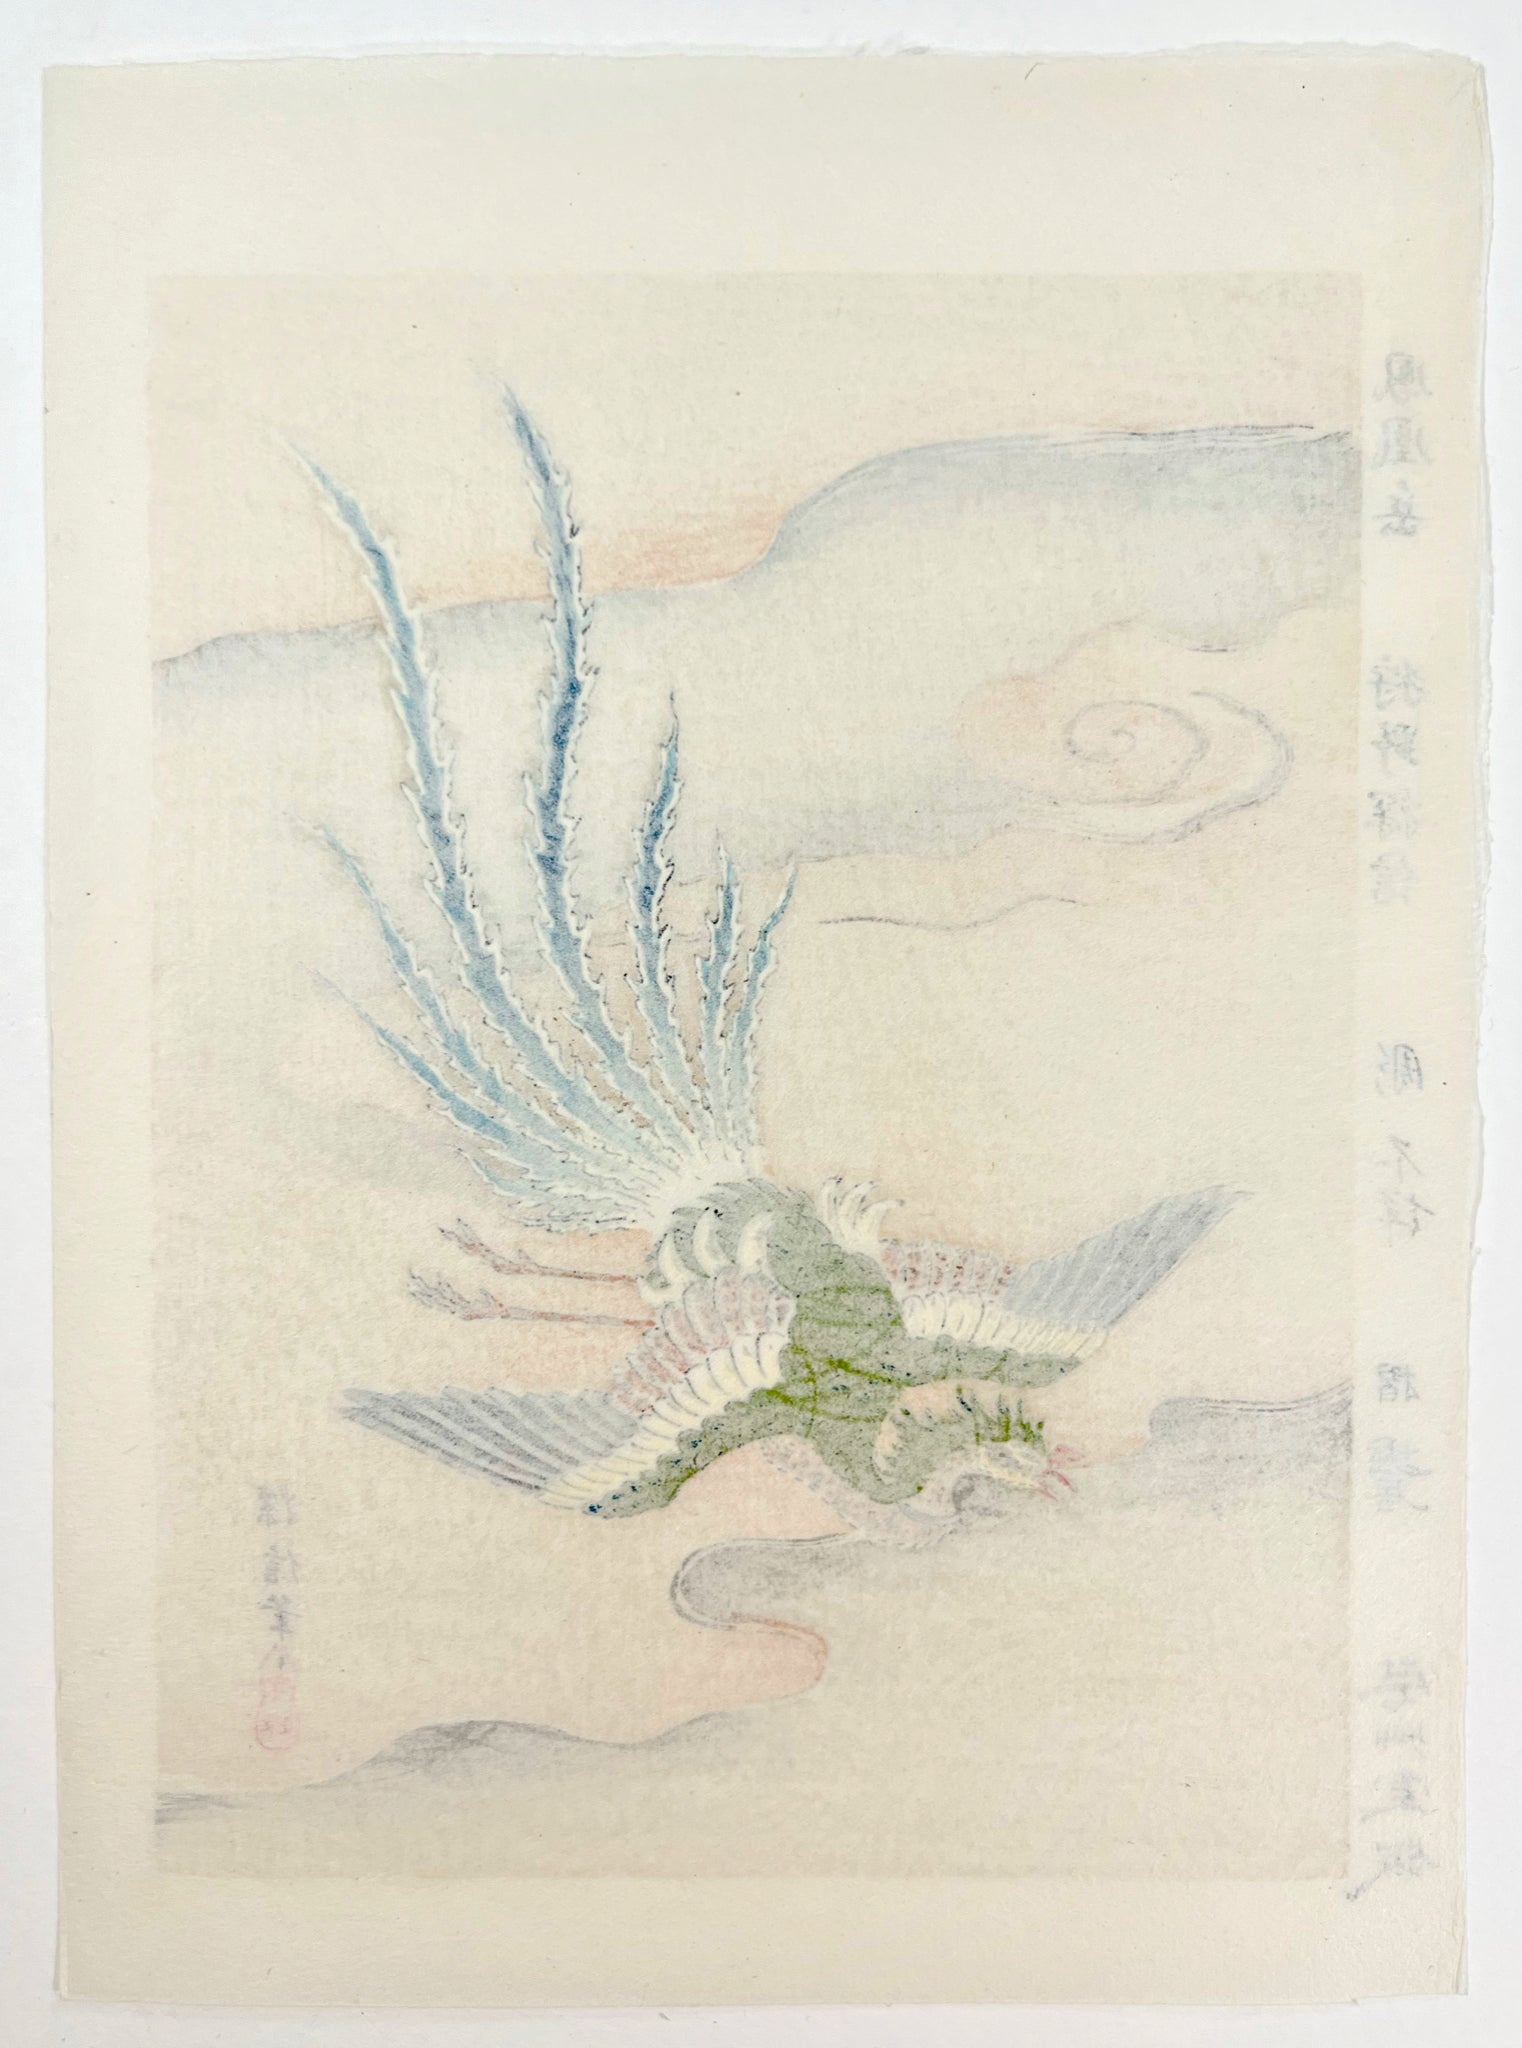 estampe japonaise phoenix en vol au dessus de la mer, dos de l'estampe